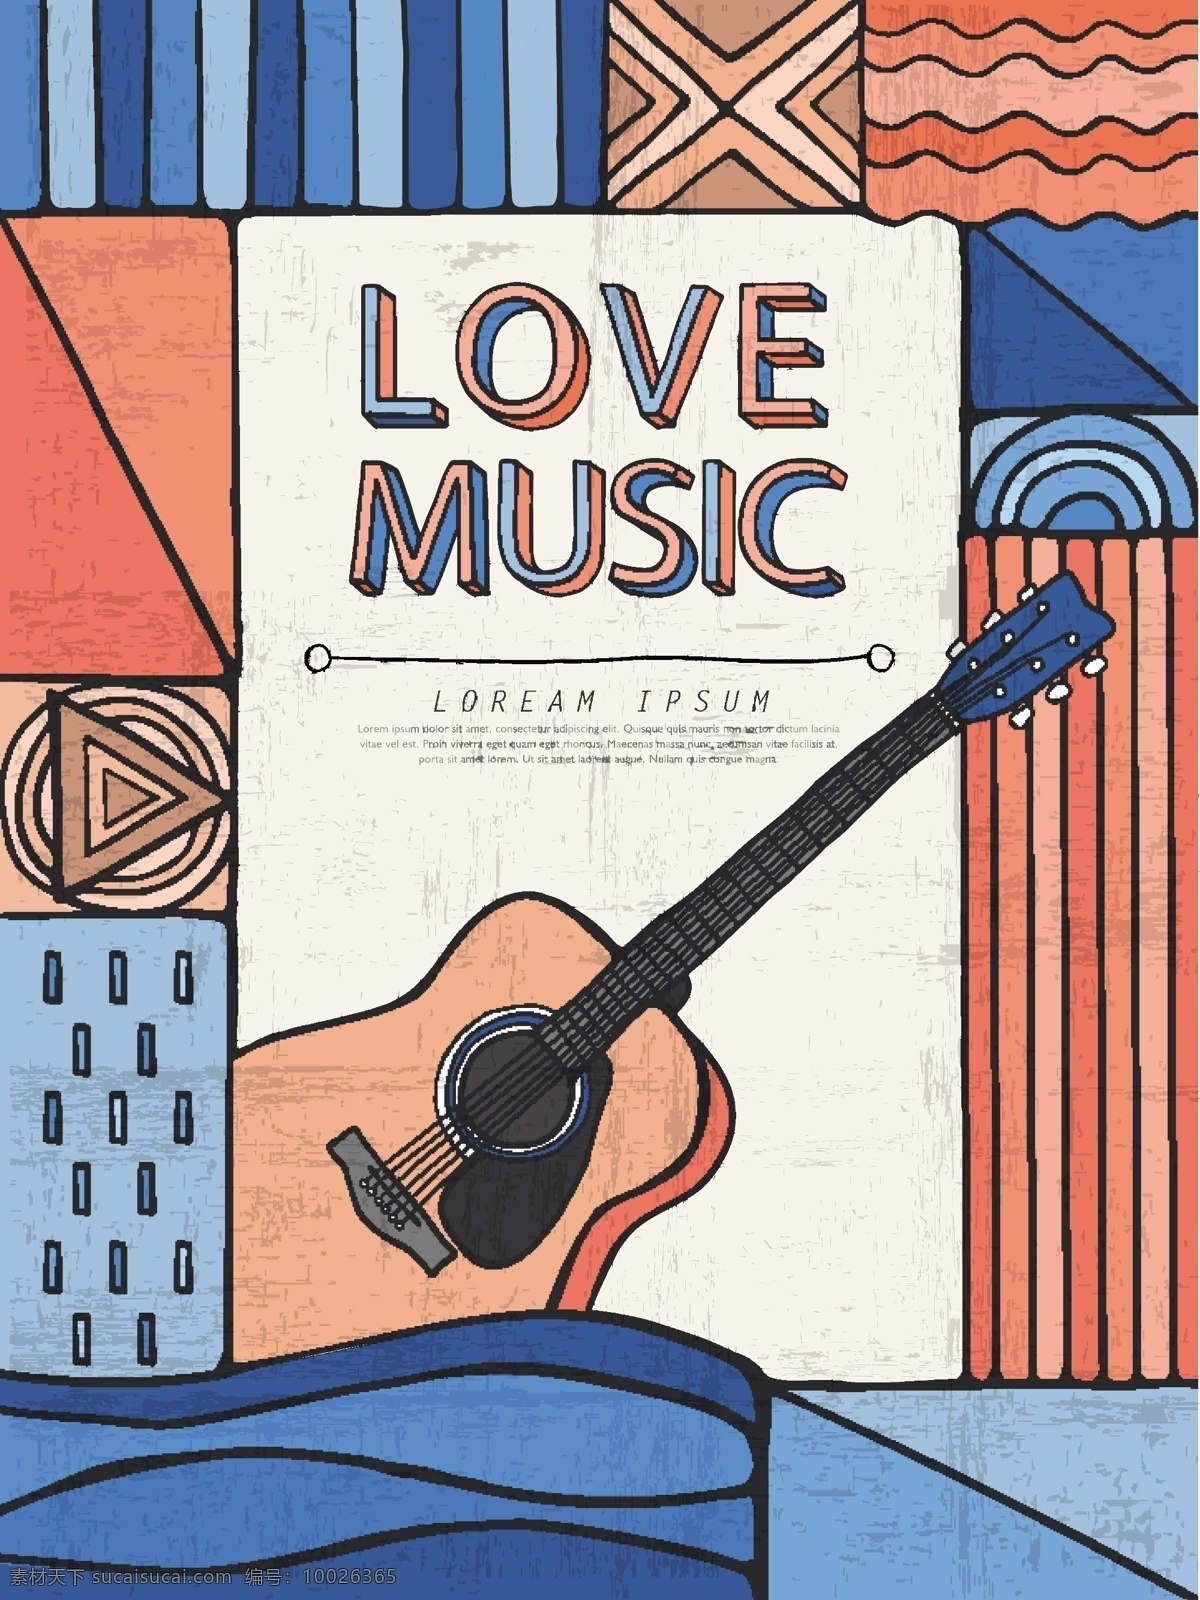 复古 音乐会 宣传册 封面 矢量 吉他 乐器 曲线 条纹 拼接 创意 插画 背景 海报 画册